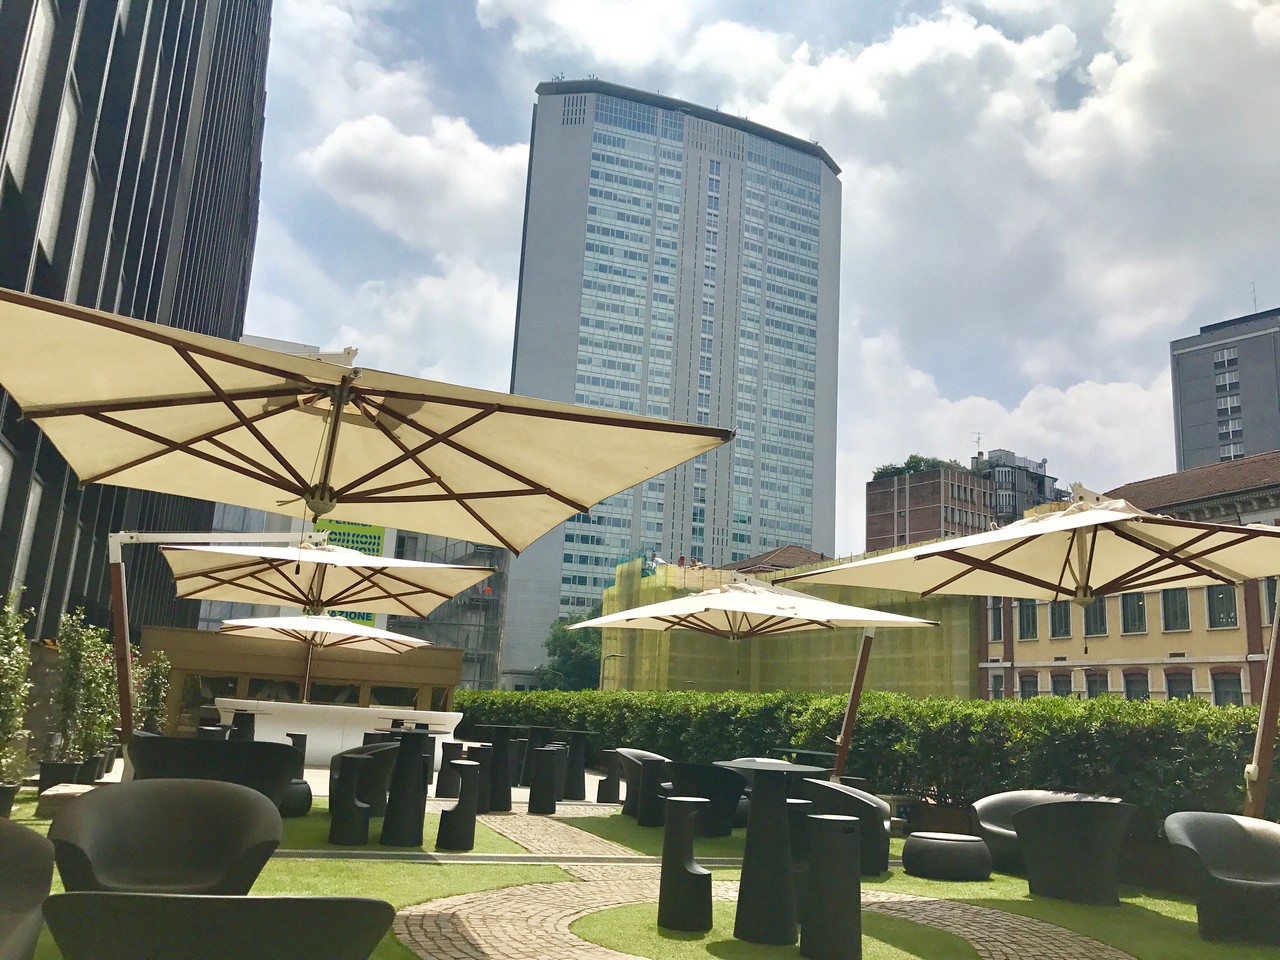 Hotel Hilton Milan: riapre la terrazza glamour di Milano